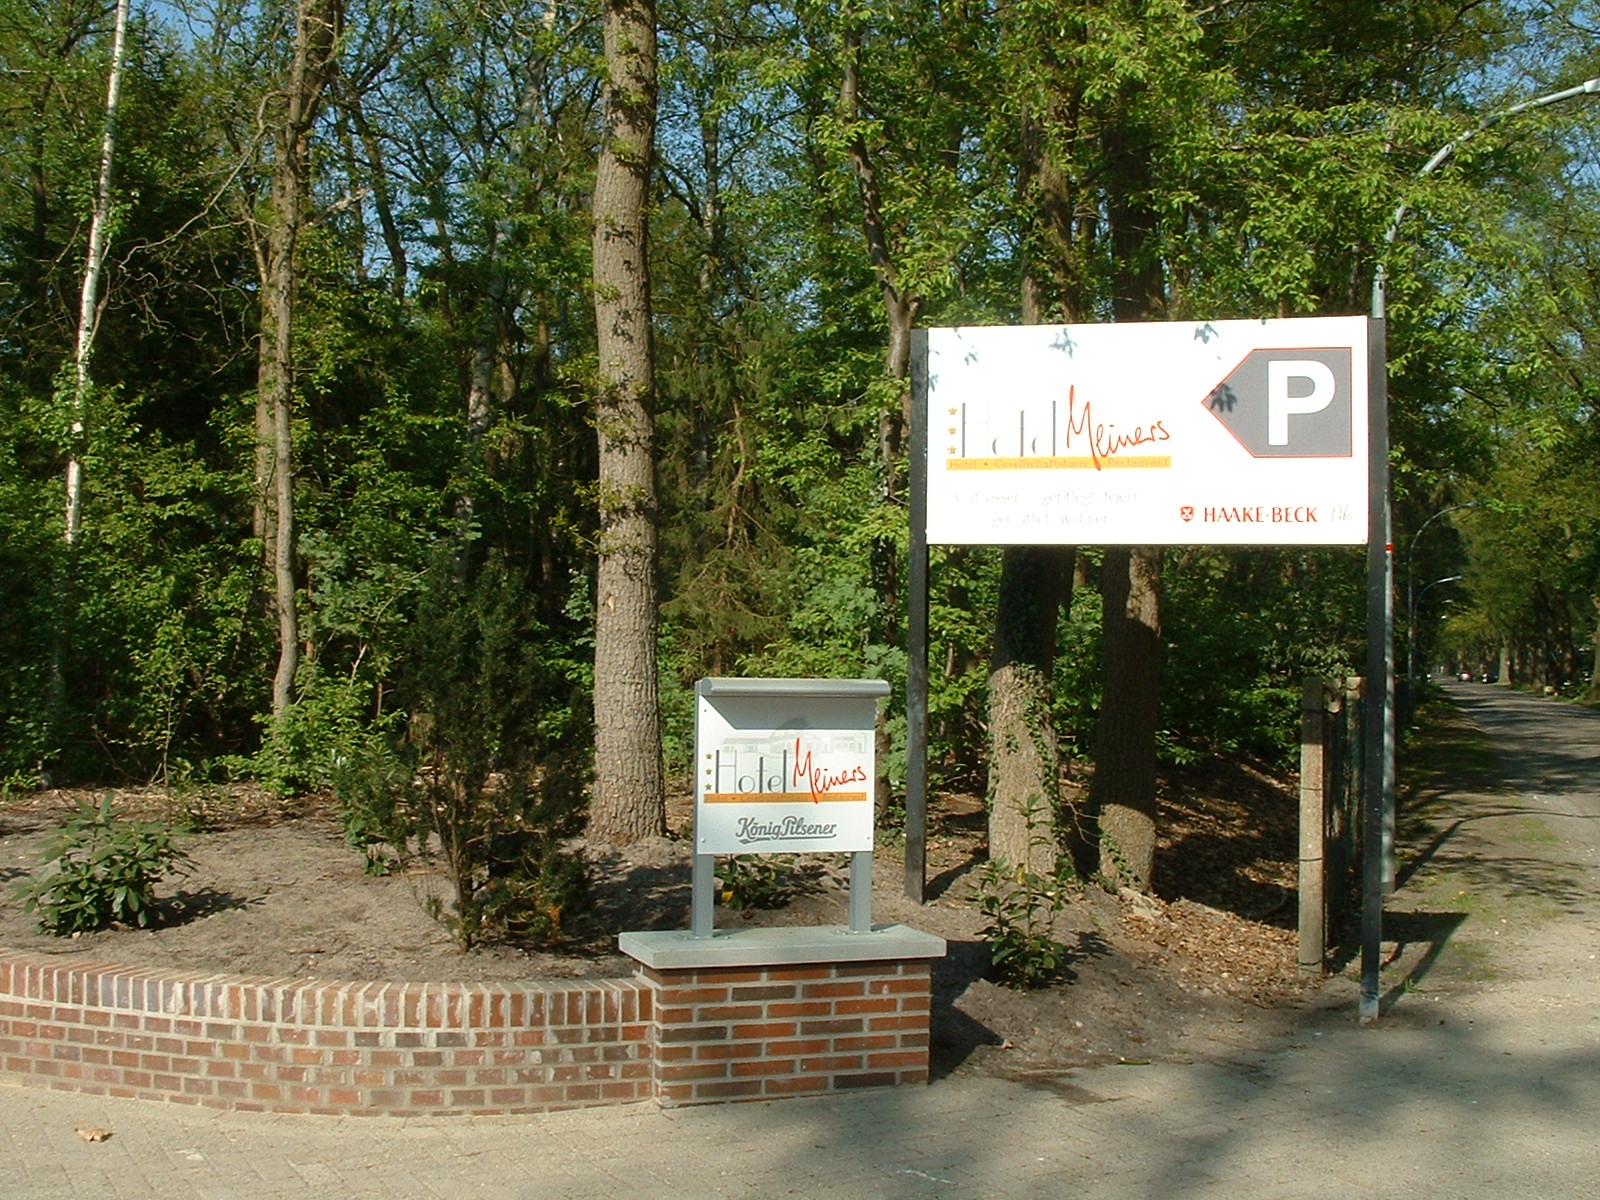 Dorfkrug Meiners in Hatterwüsting - großer Parkplatz neben dem Hotel